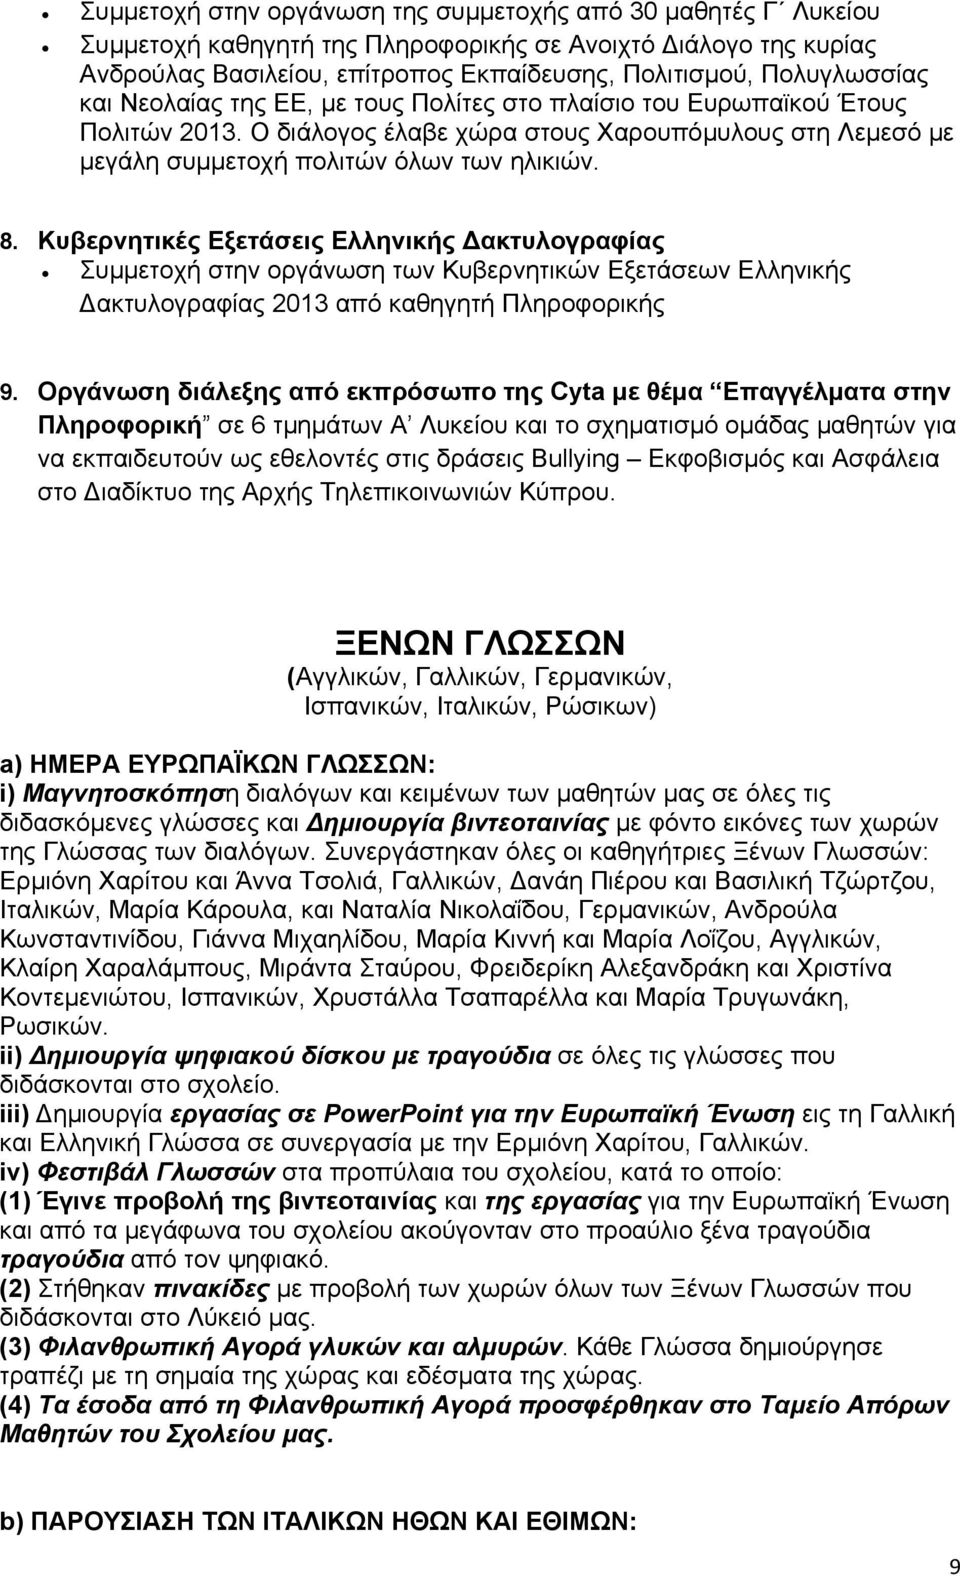 Κυβερνητικές Εξετάσεις Ελληνικής ακτυλογραφίας Συµµετοχή στην οργάνωση των Κυβερνητικών Εξετάσεων Ελληνικής ακτυλογραφίας 2013 από καθηγητή Πληροφορικής 9.